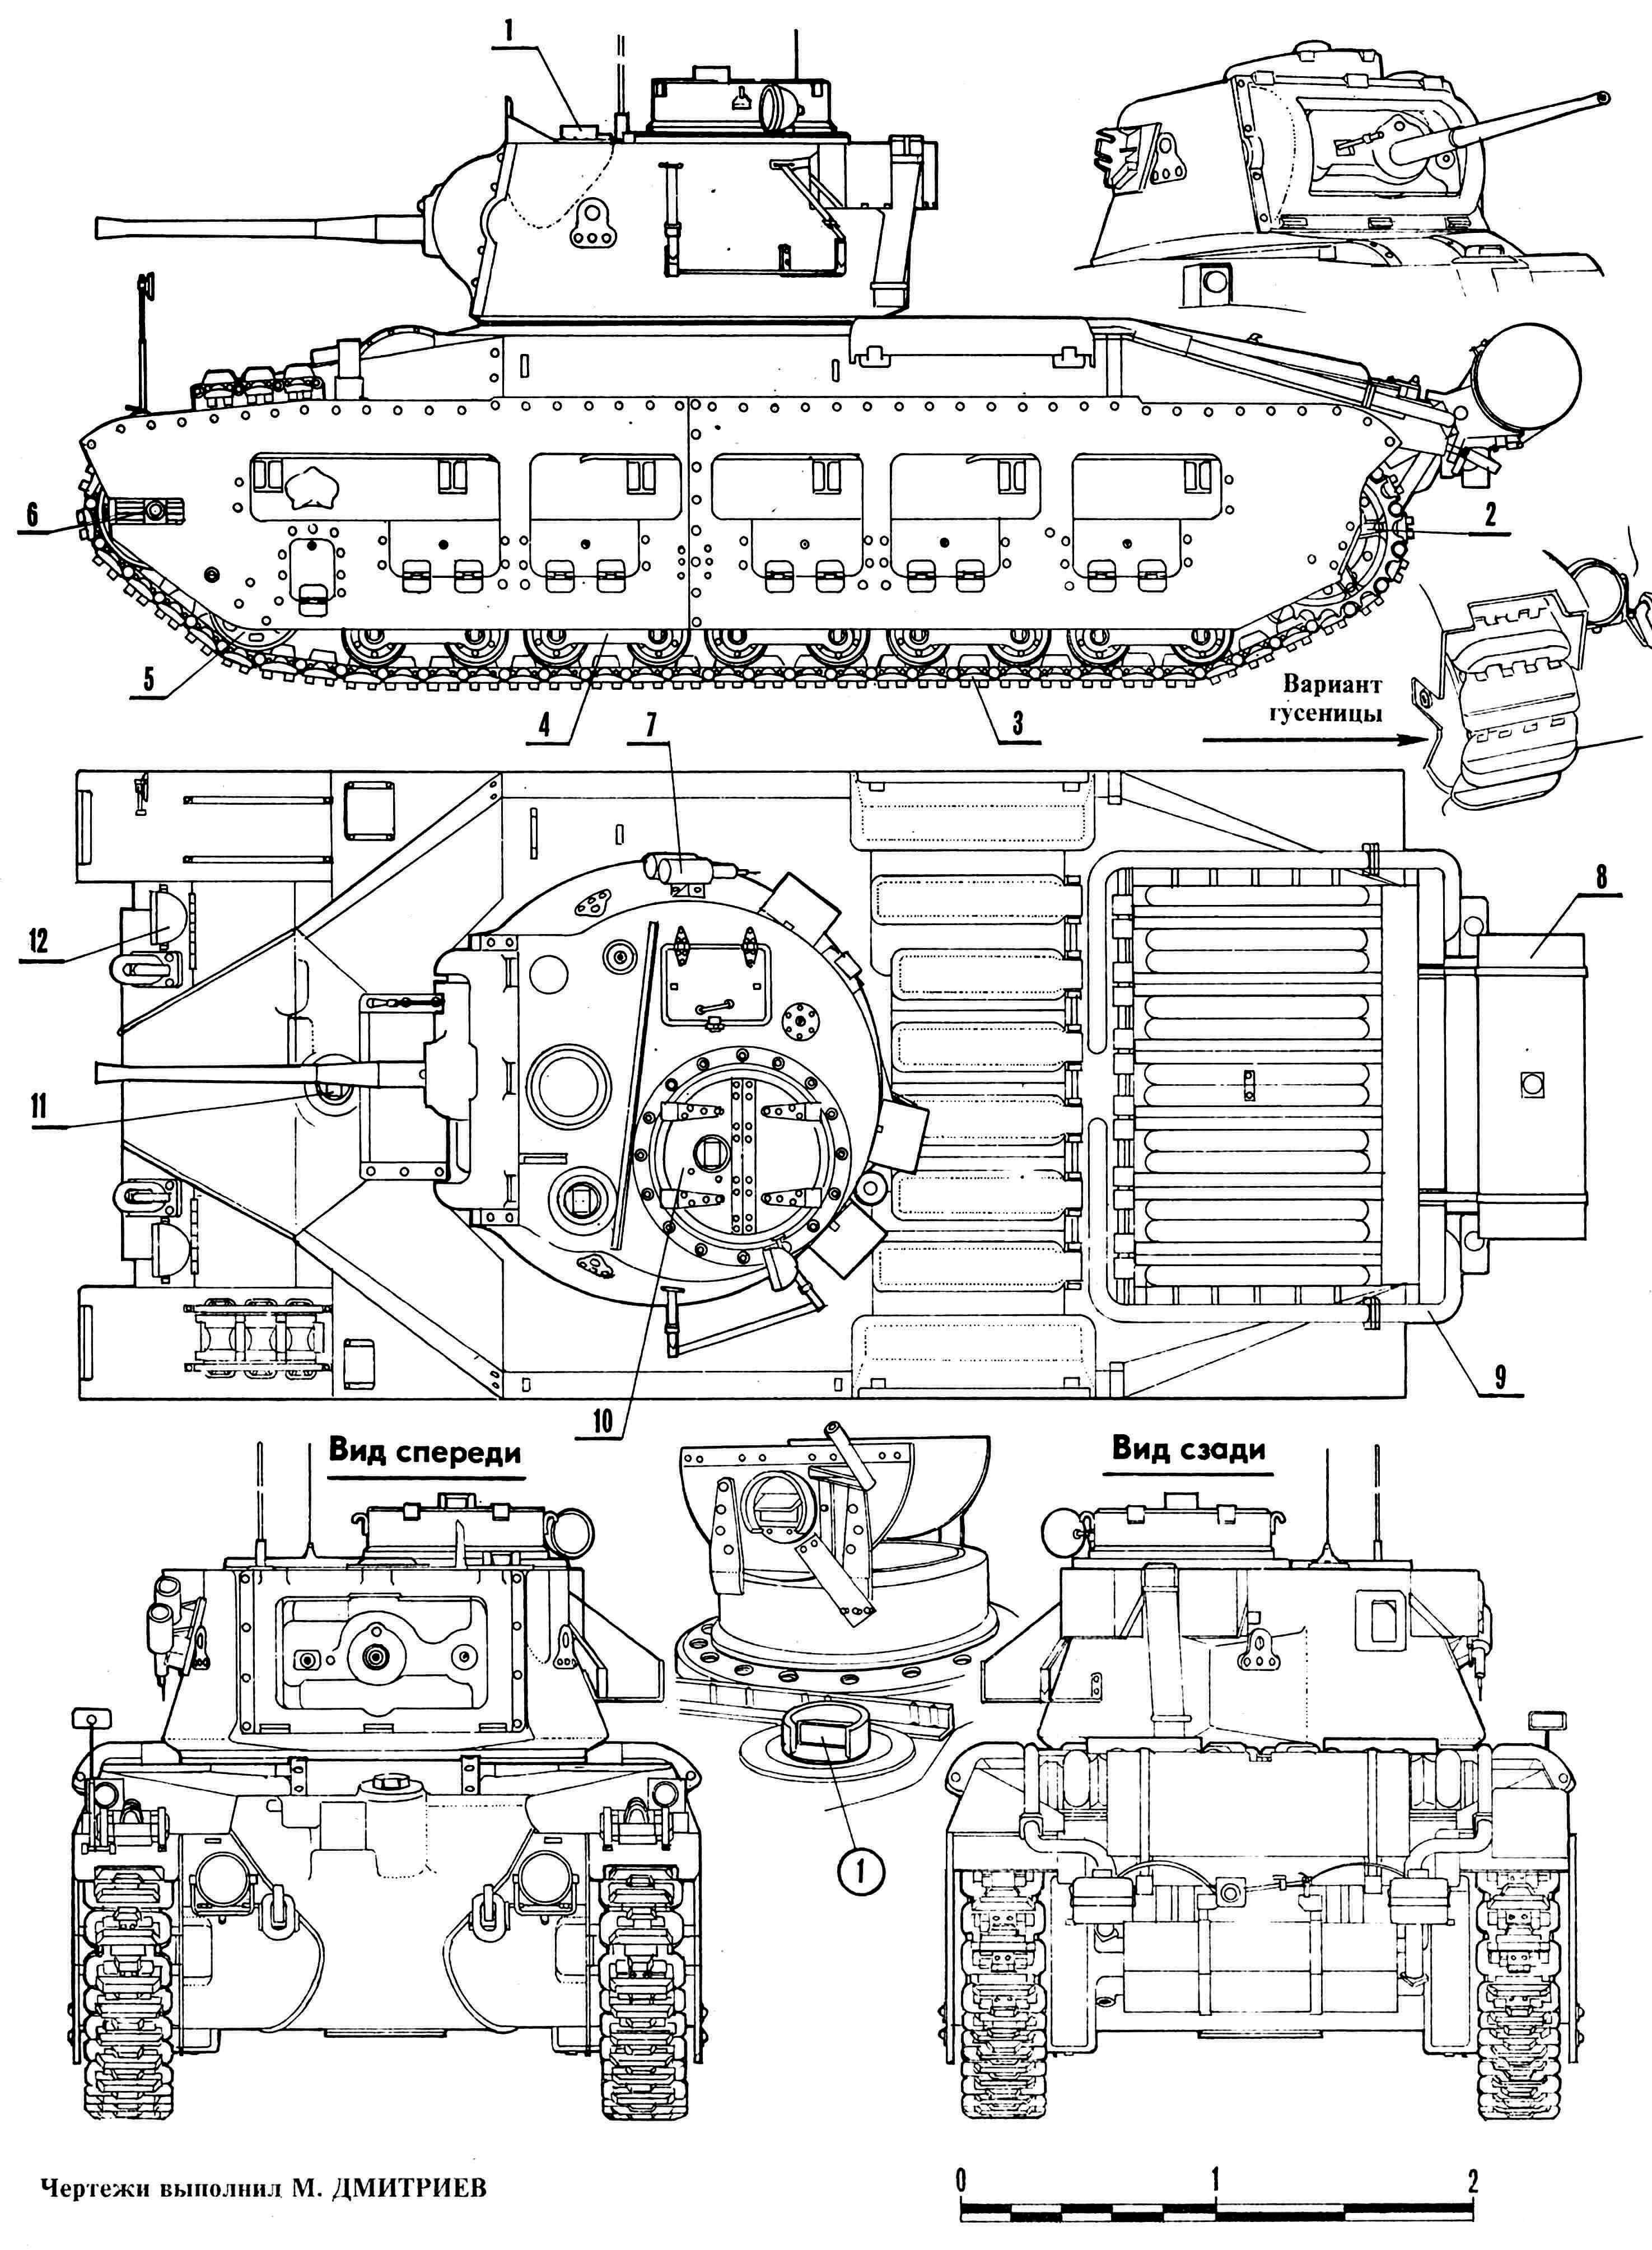 Пехотный танк Мк.II «Матильда»: 1 — перископический прибор наблюдения, 2 — ведущее колесо, 3 — трак гусеничной цепи, 4 — тележка подвески, 5 — вспомогательный каток, 6 — направляющее колесо, 7 —дымовые мортирки, 8 — дополнительный топливный бак, 9 — выхлопная труба, 10 — люк командира танка, 11 — перископический прибор наблюдения механика-водителя, 12 — фара.